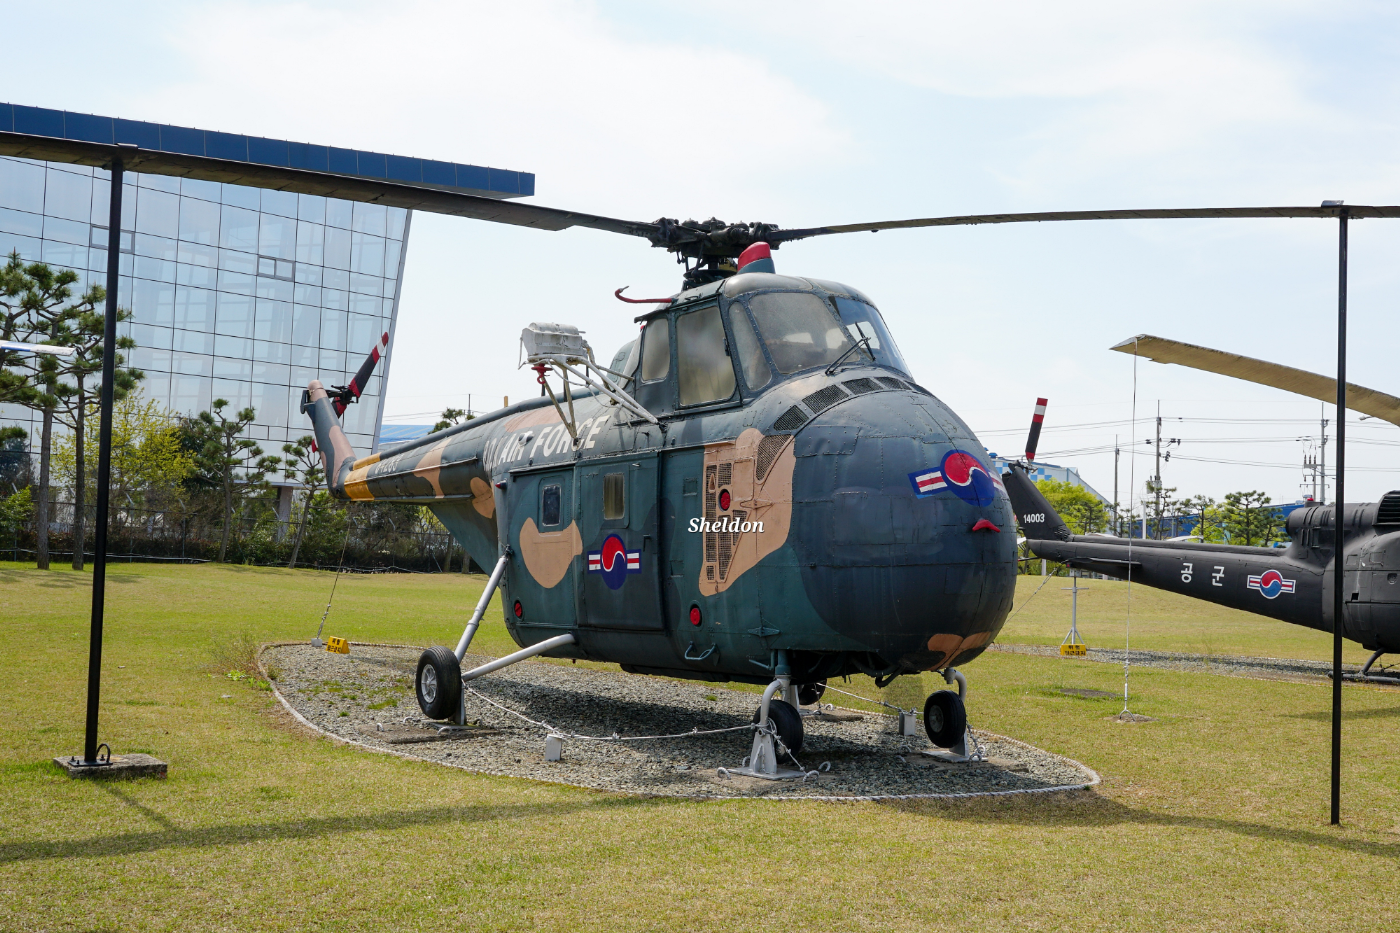 다목적 군용 헬리콥터 H-19D 치카소. 1977년 한국 공군에서 퇴역한 이후 여의도 종합안보전시장에 전시되었으며 다른 전시물과 같이 1995년에 KAI 항공우주박물관으로 이전되었다.